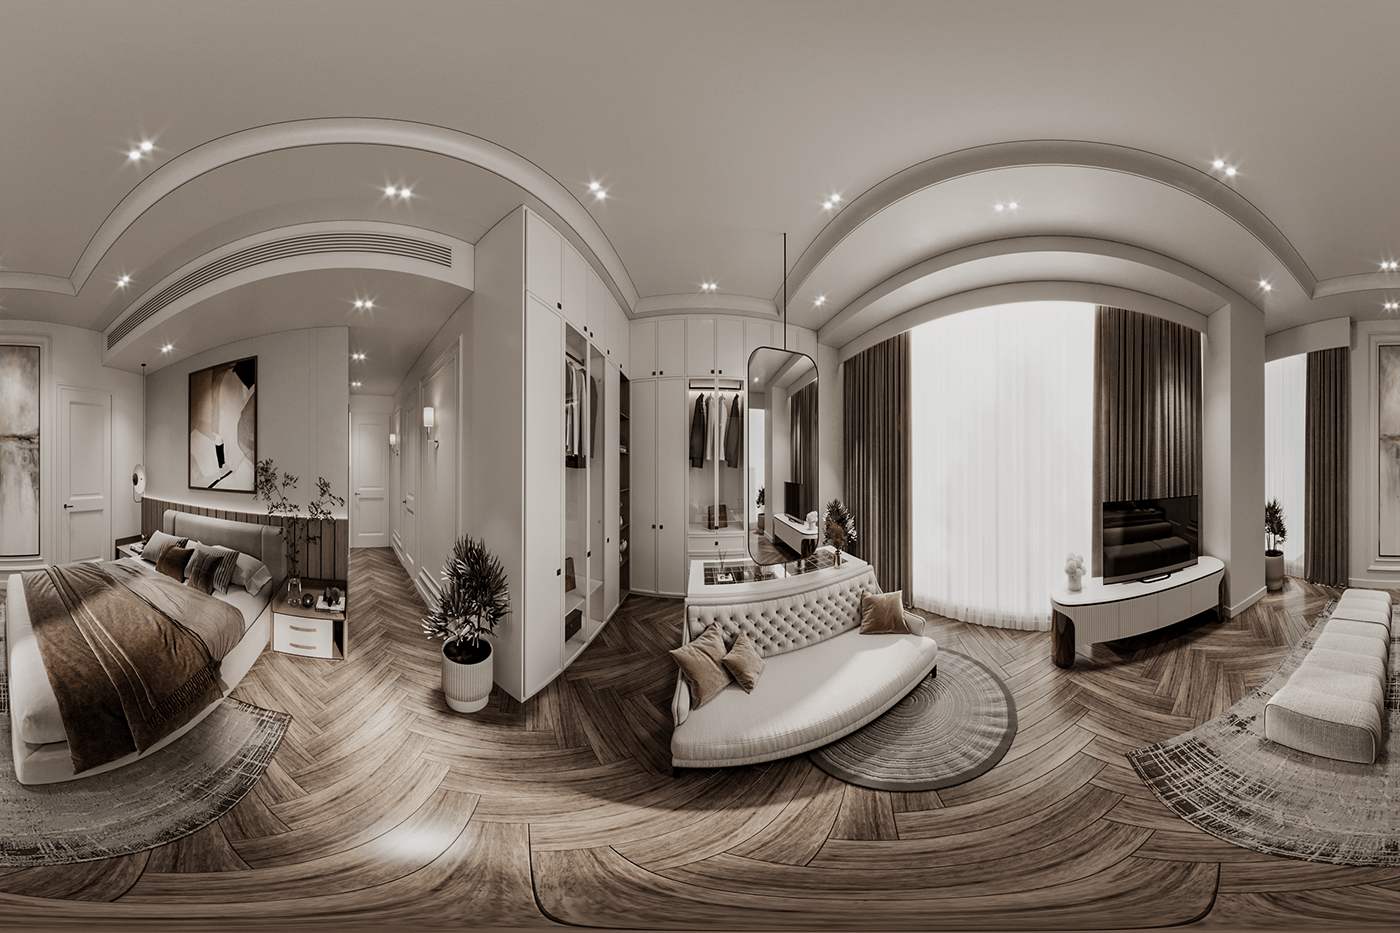 master bedroom Bedroom interior design Interior interiors Render corona render  ArcViz tanvir ahmmed tanvirahmmed007